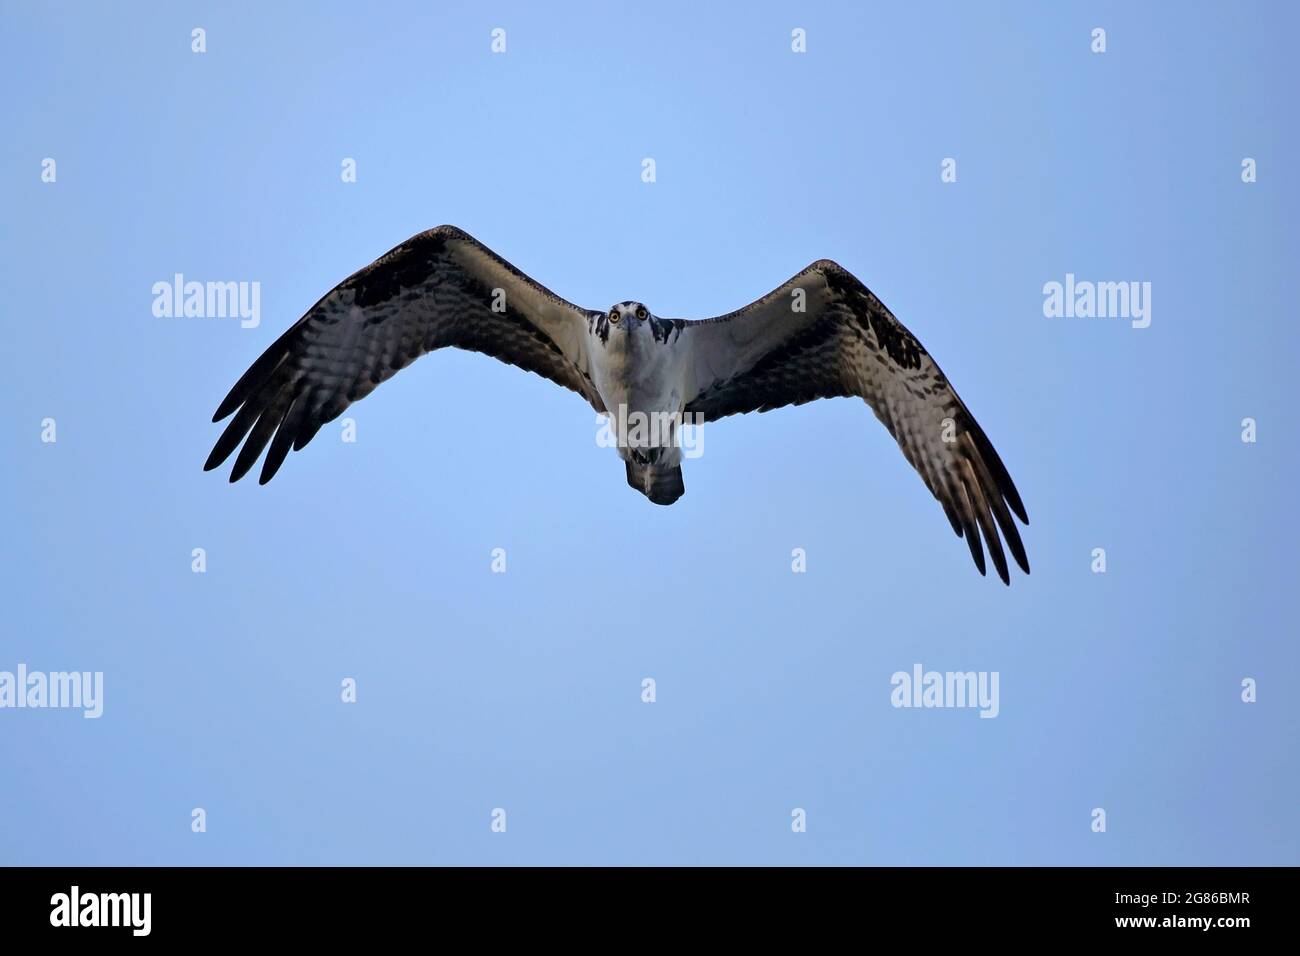 Fischadler im Flug am blauen Himmel in der Nähe der Dämmerung, Frontalansicht, wachsam aussehend Stockfoto